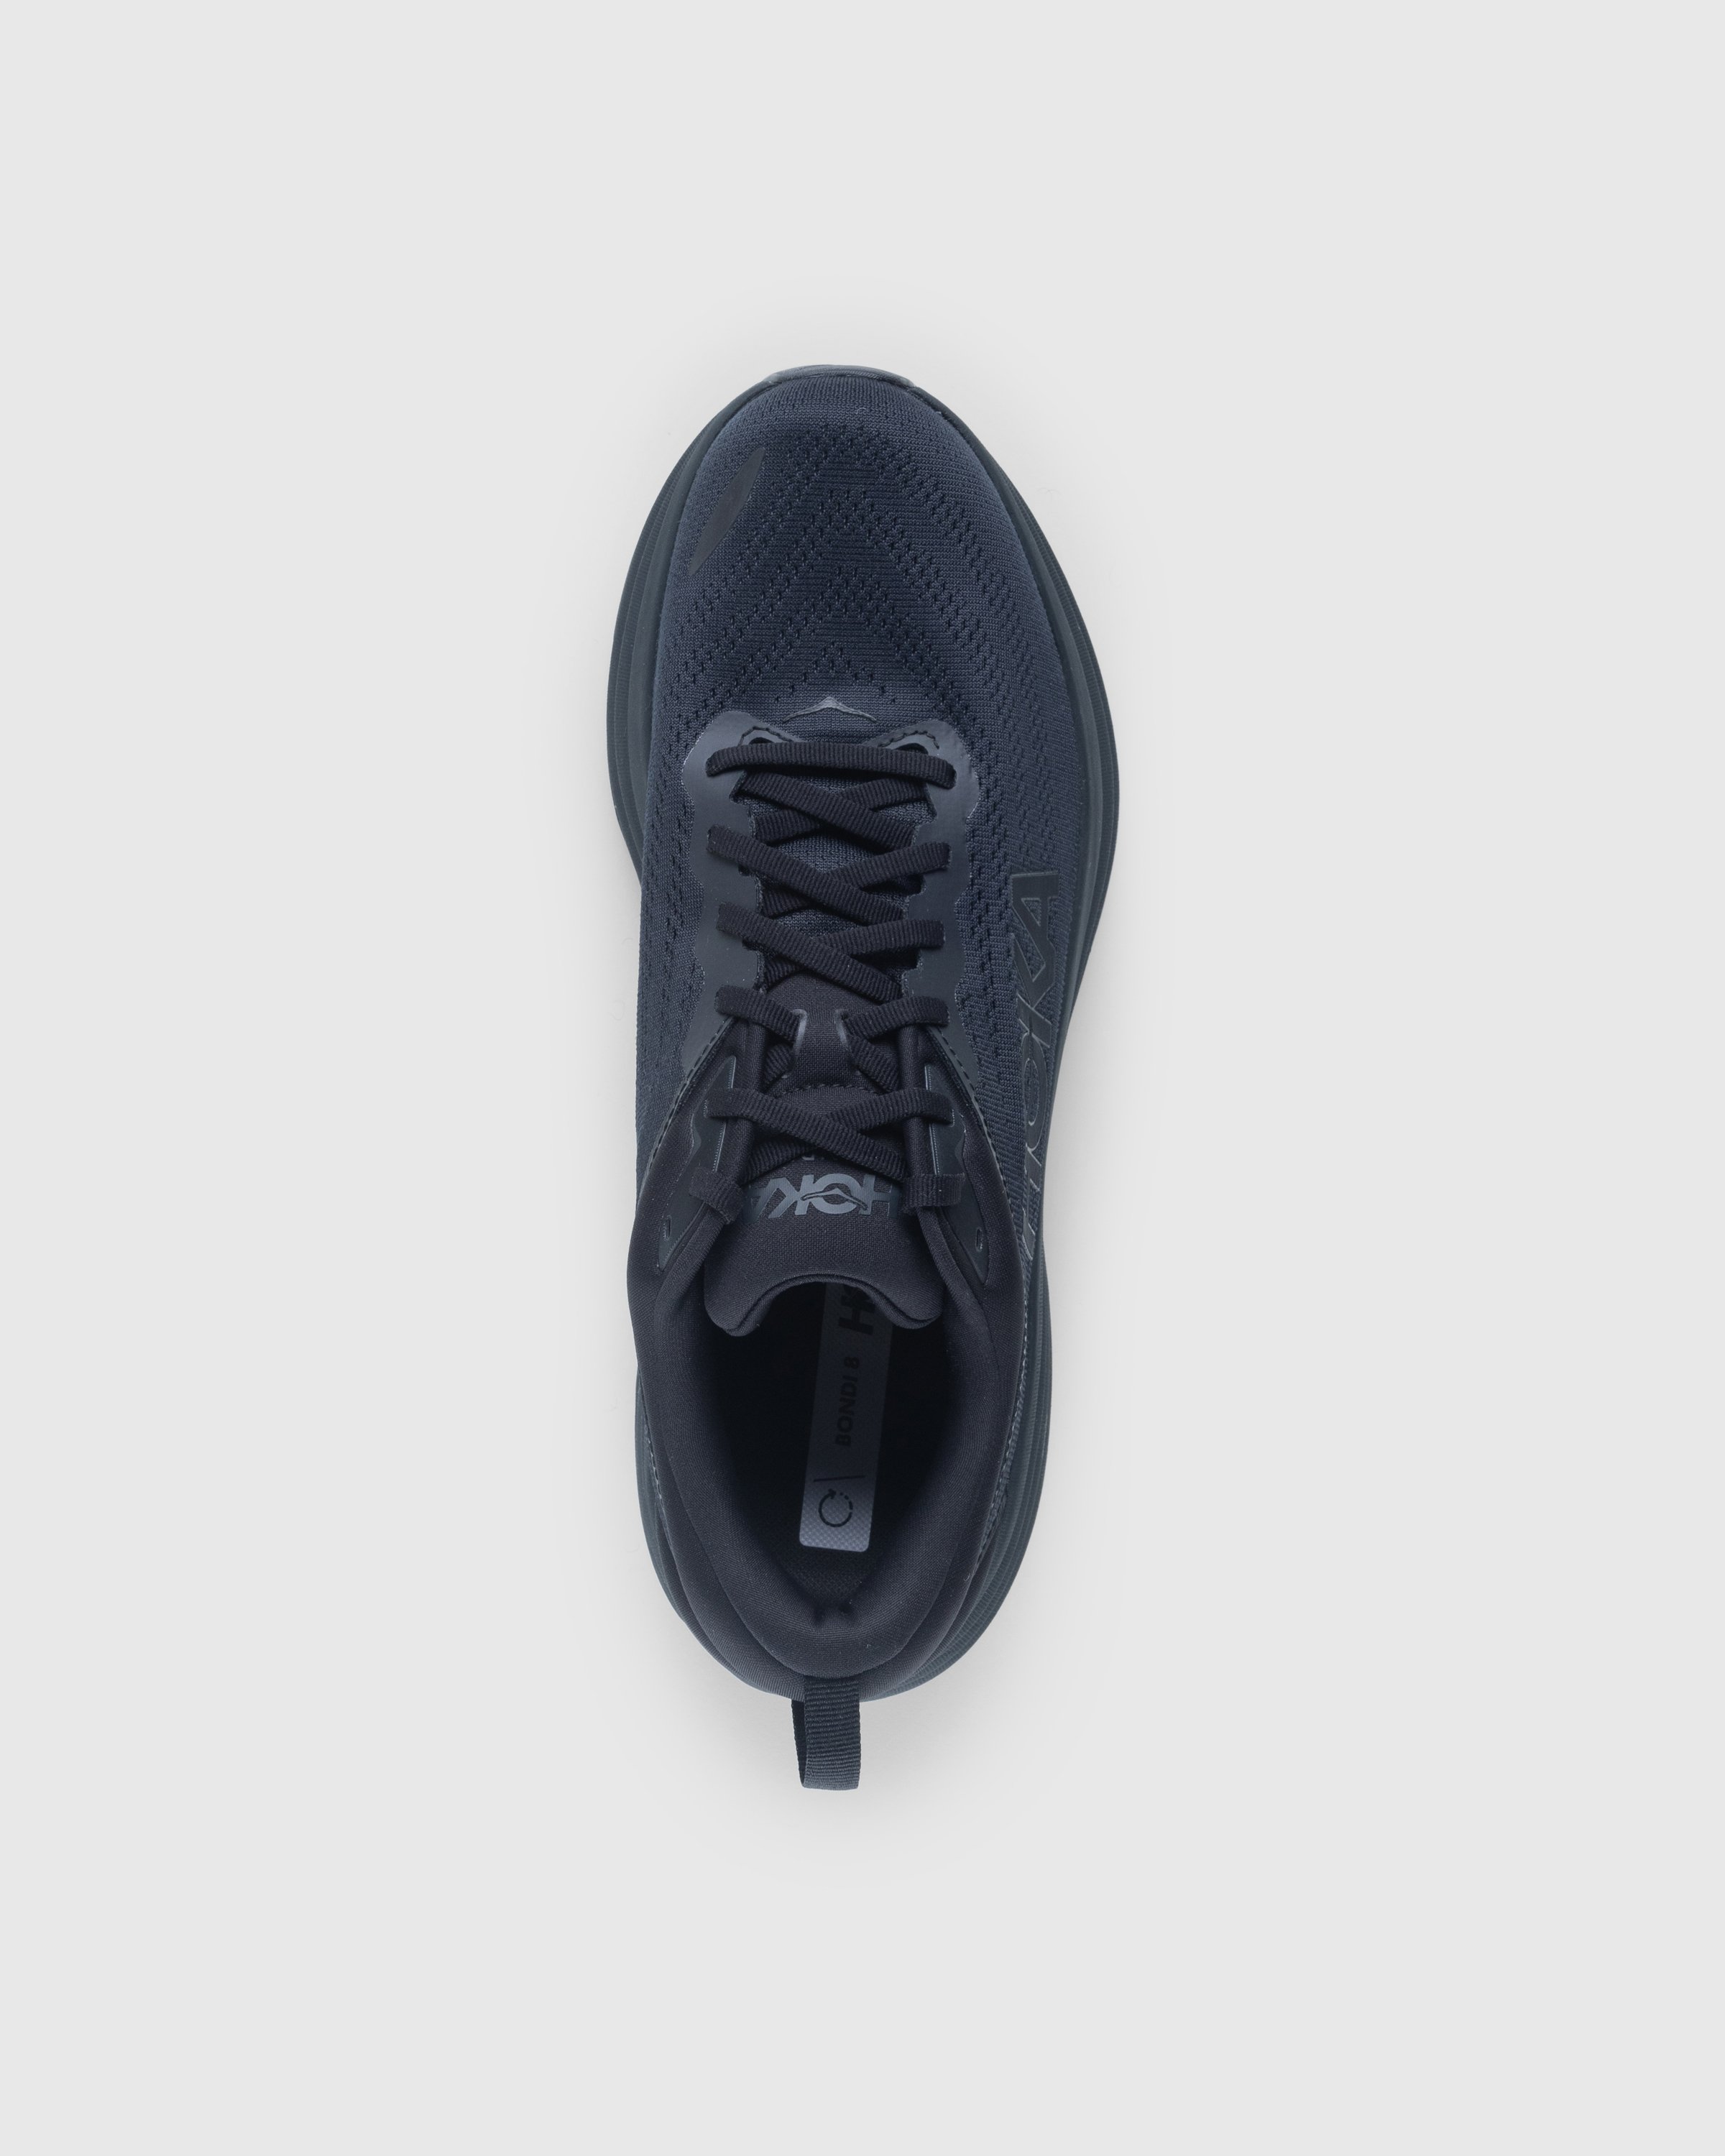 HOKA - Bondi 8 Black/Black - Footwear - Black - Image 6